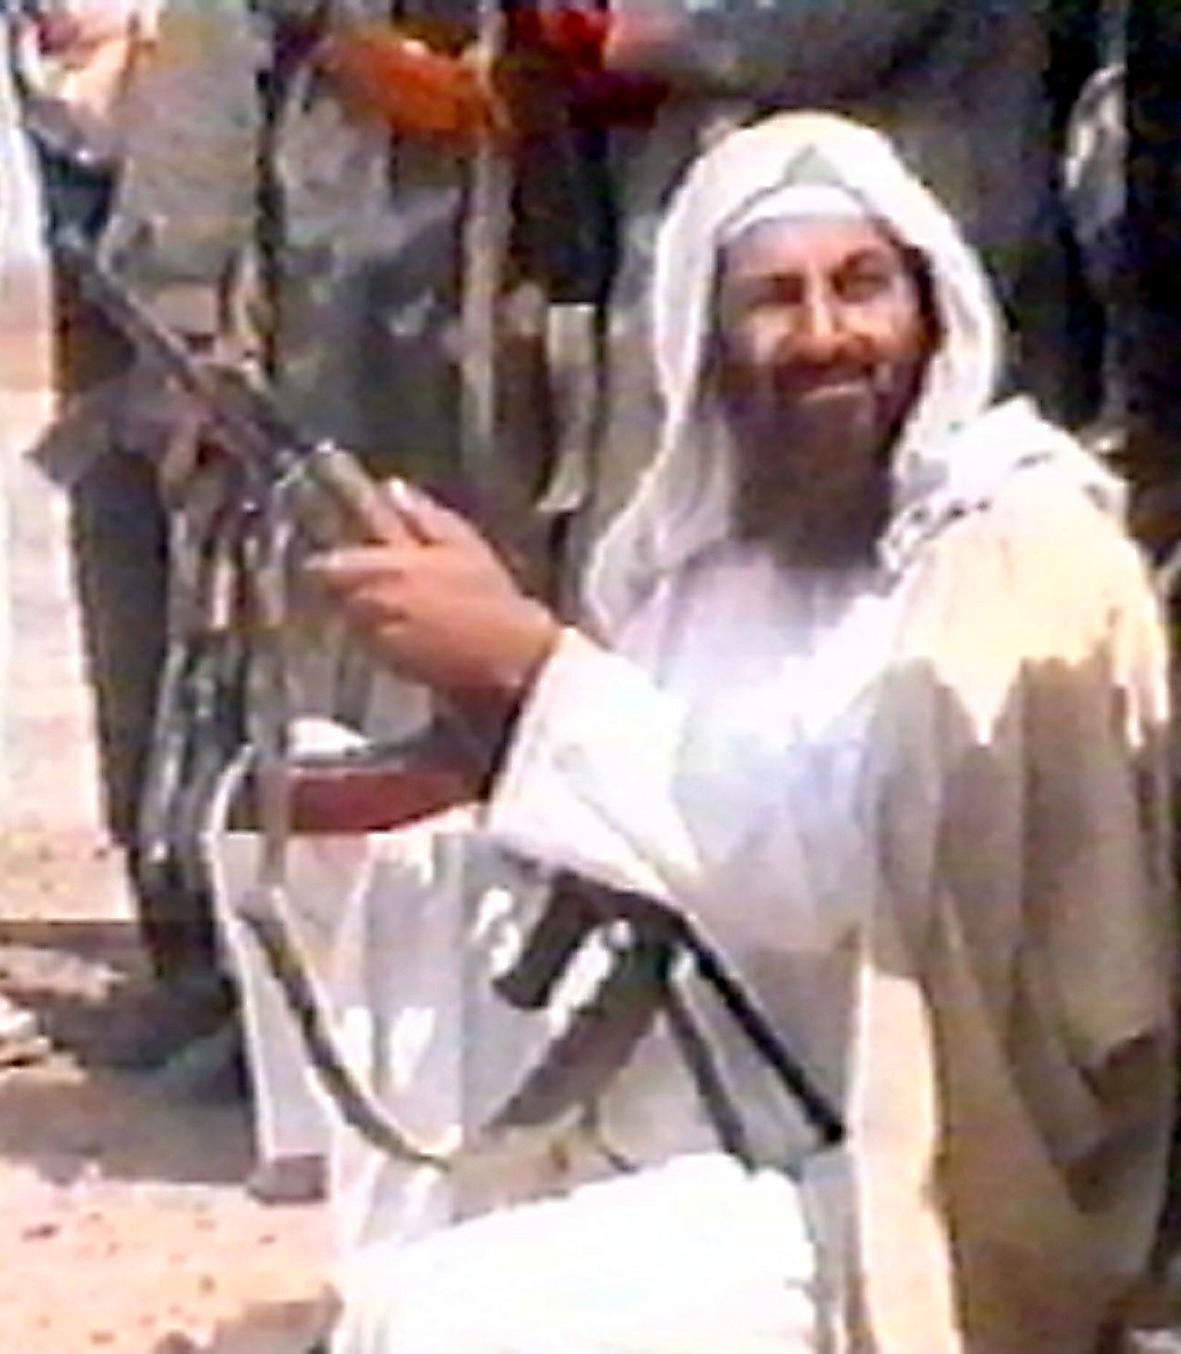 Usama bin Ladin sköts ihjäl av elitsoldater.